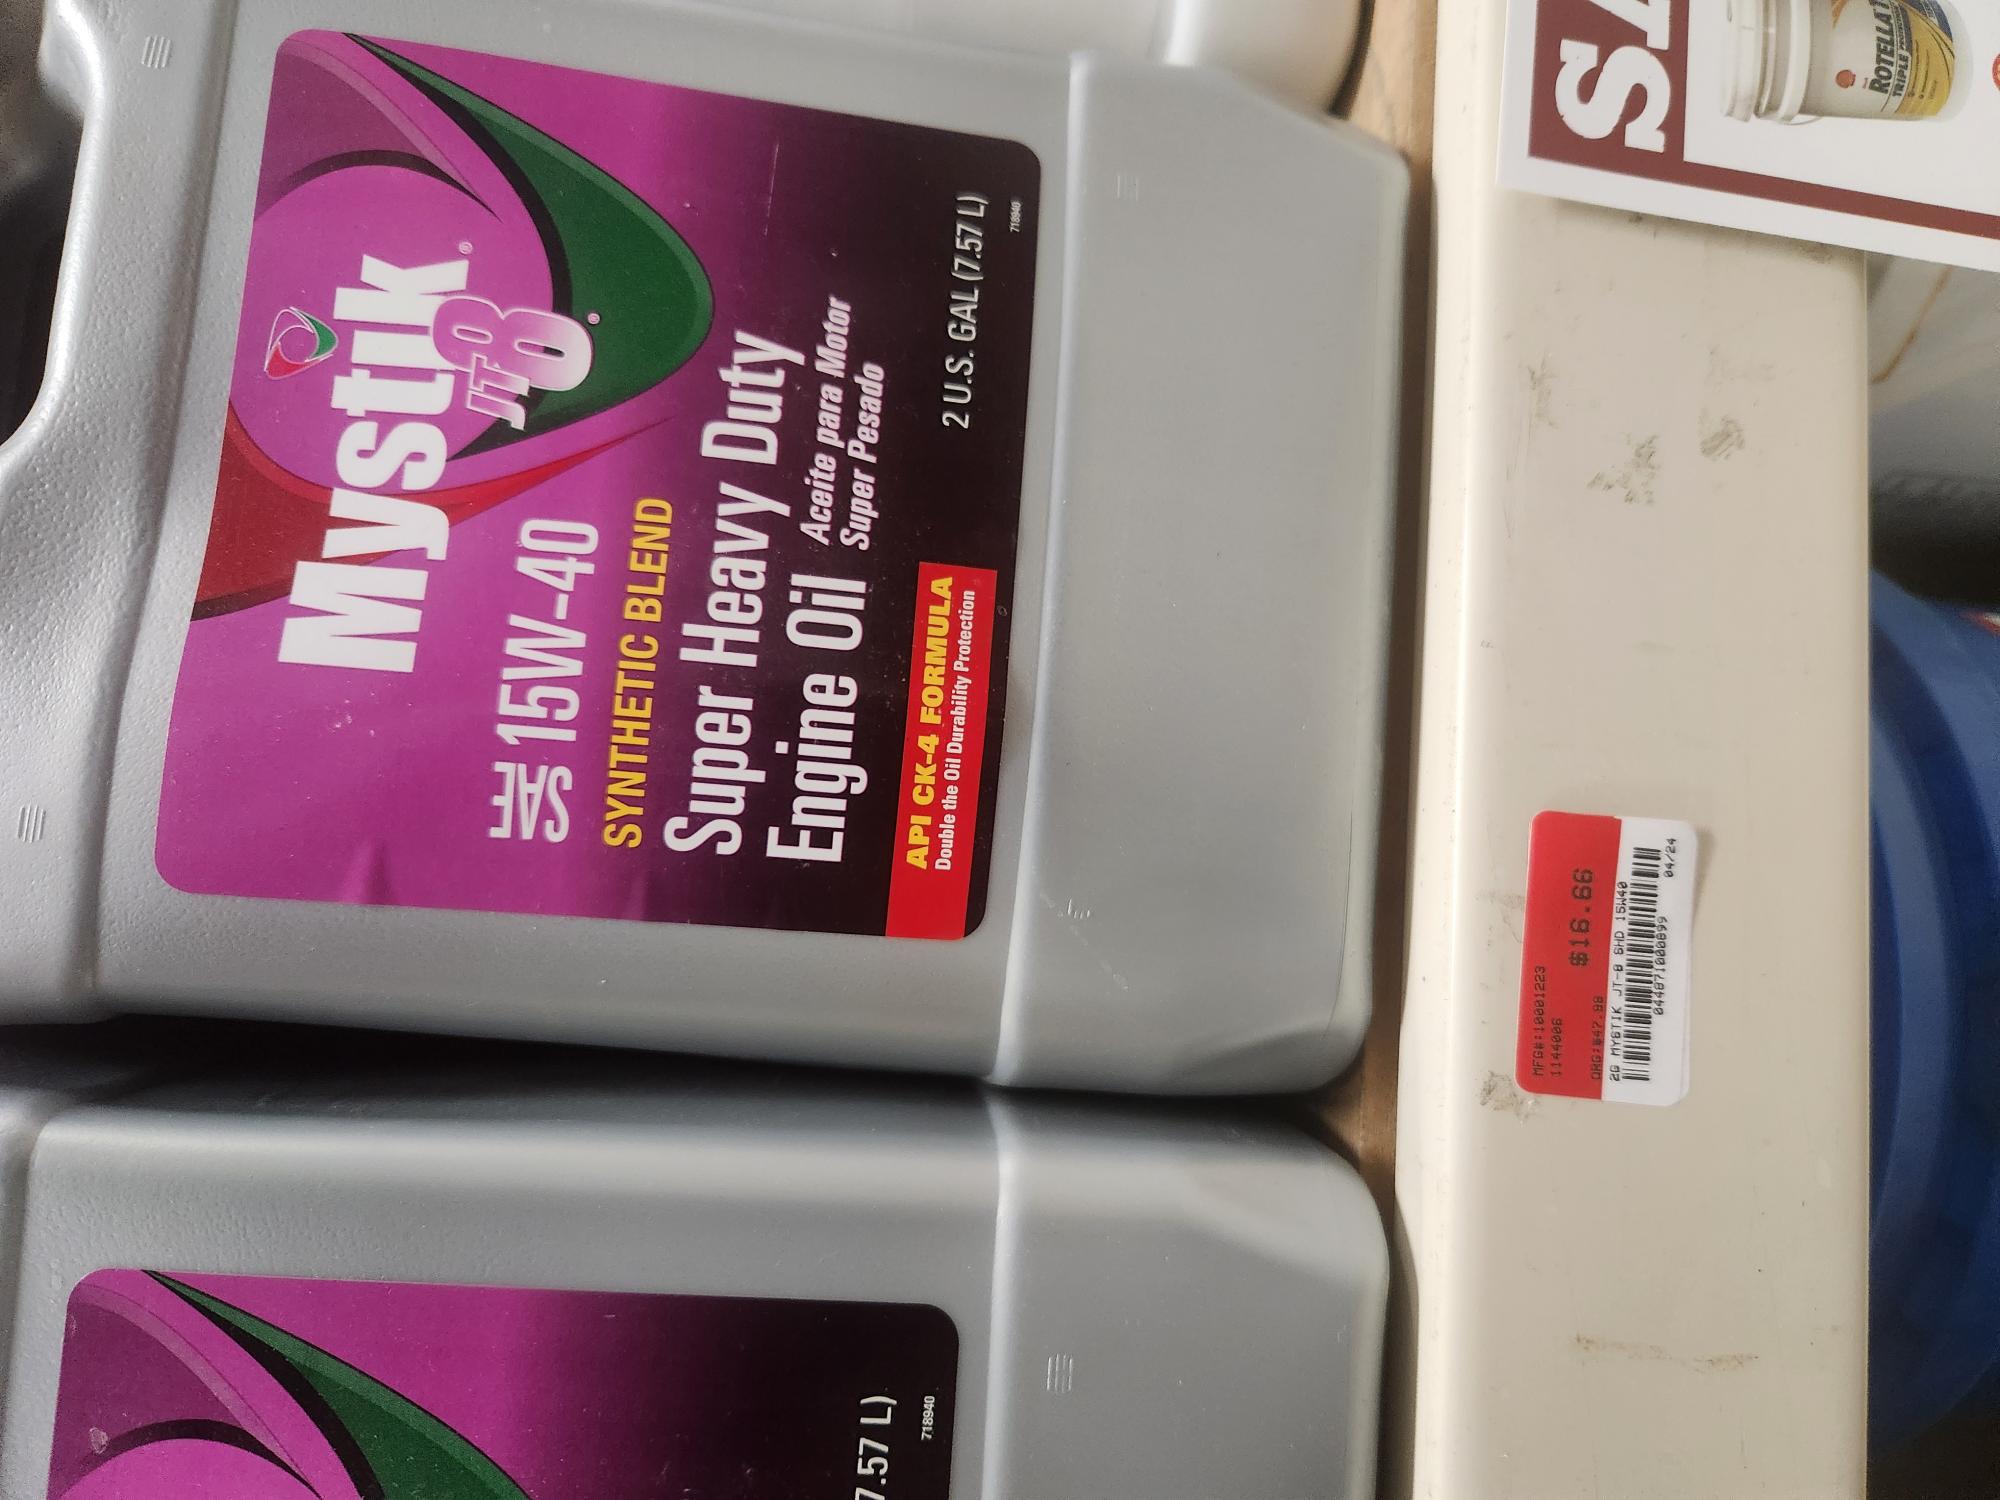 Mystik 15w-40 synthetic blend oil 2 gallons Murdoch's $16.66